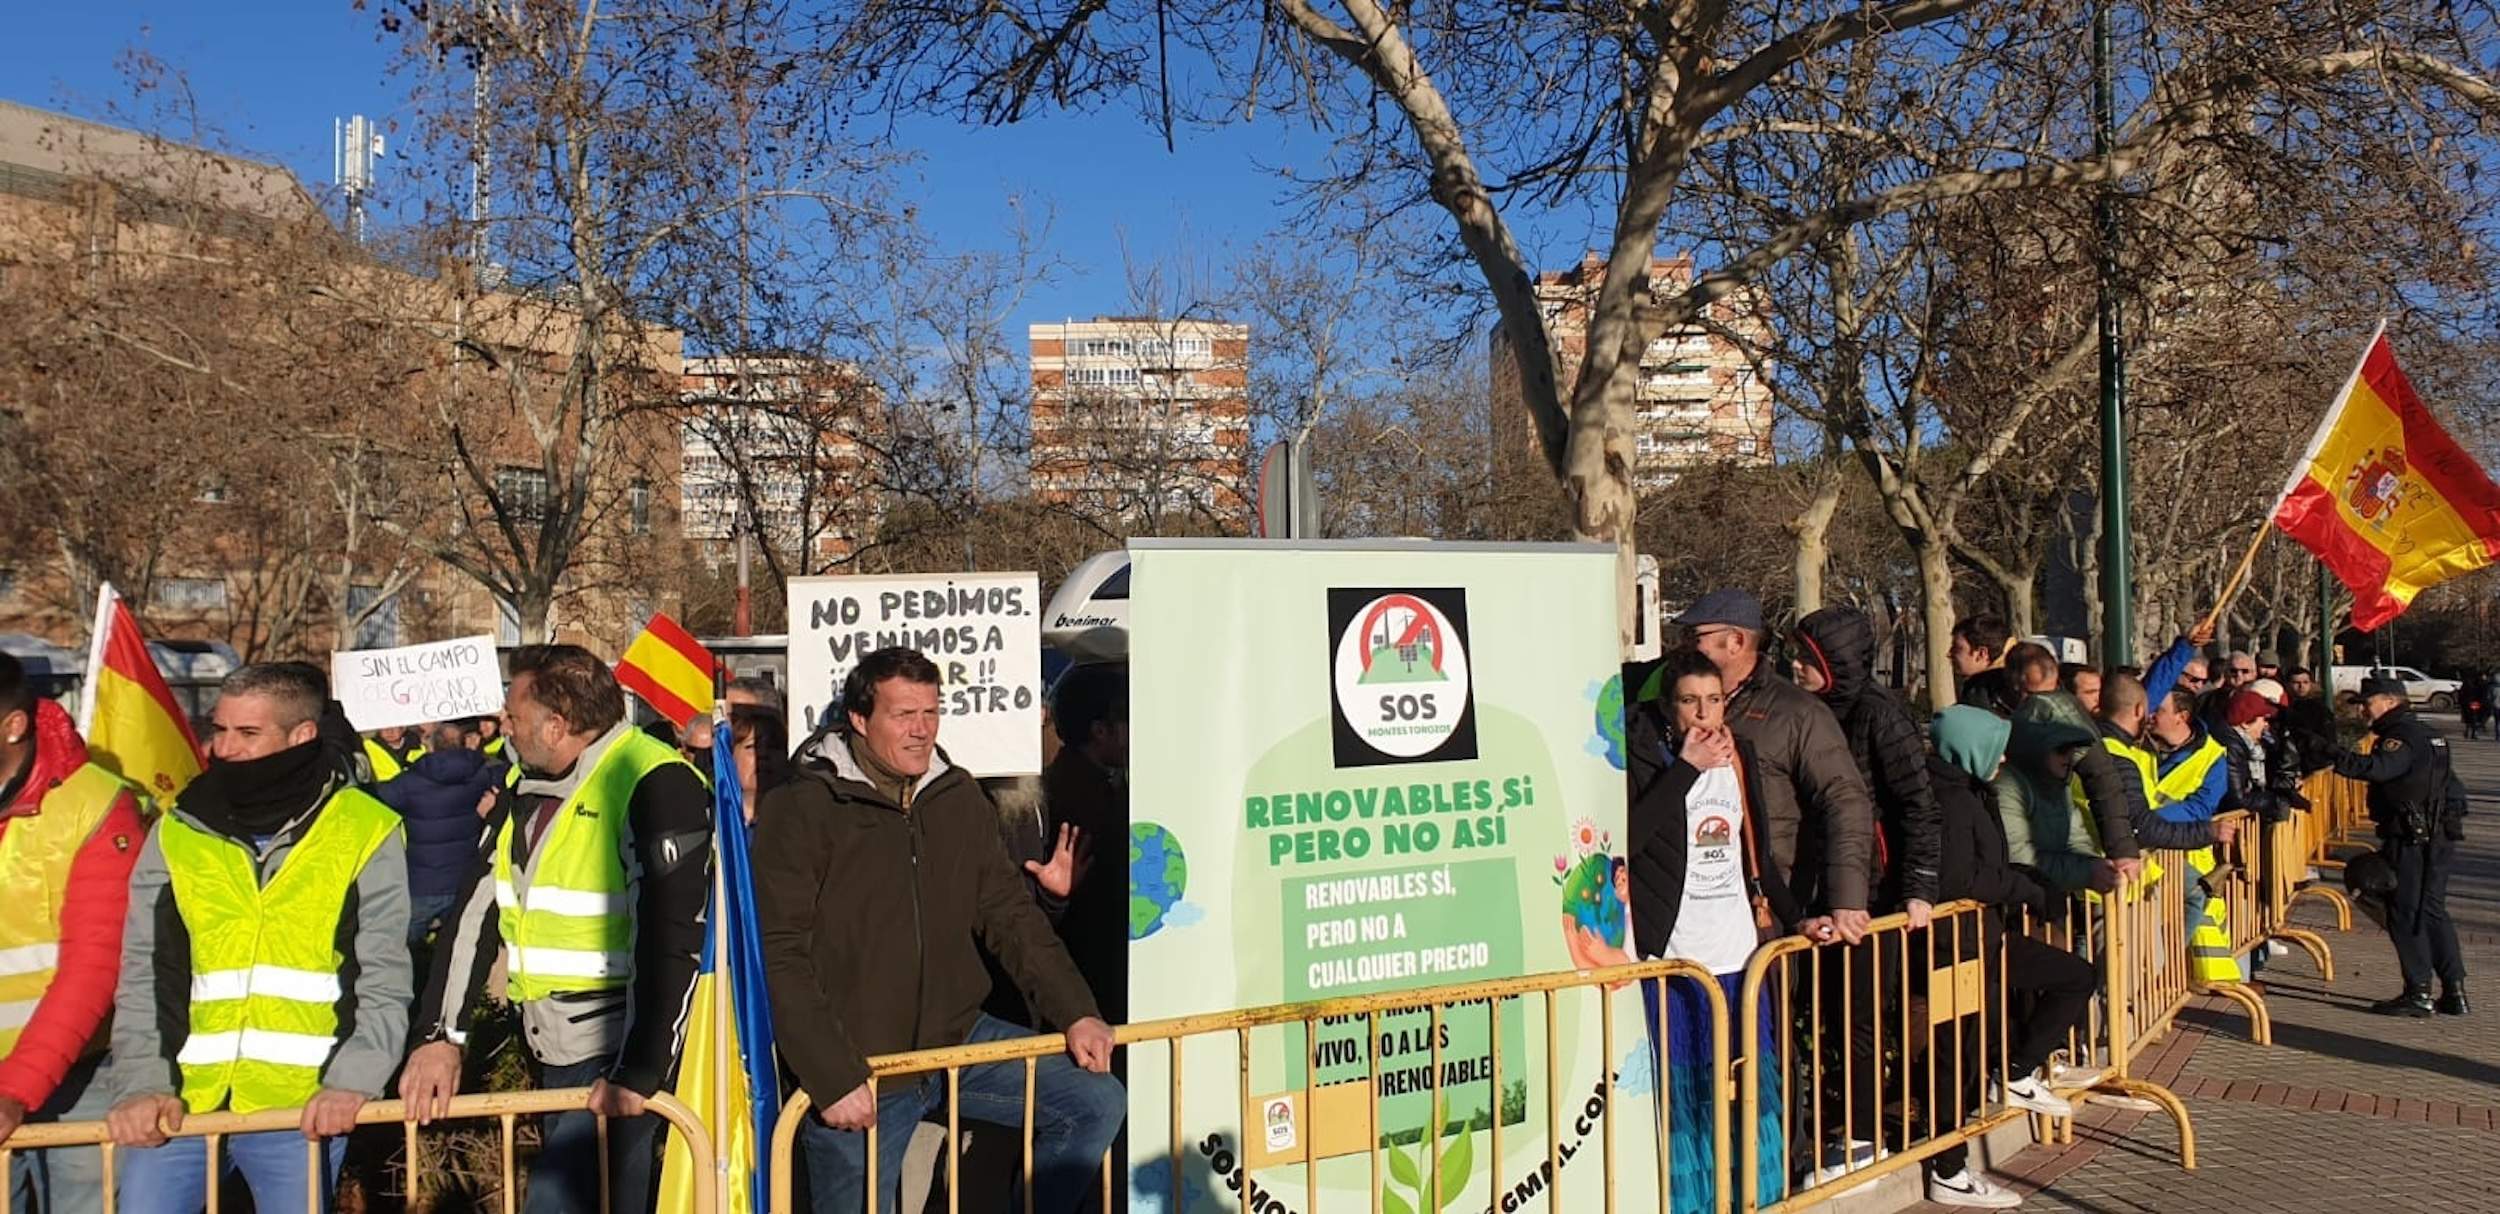 150 pagesos protesten a l'entrada dels Goya a Valladolid: "L'agenda 2030 enfonsa el camp"